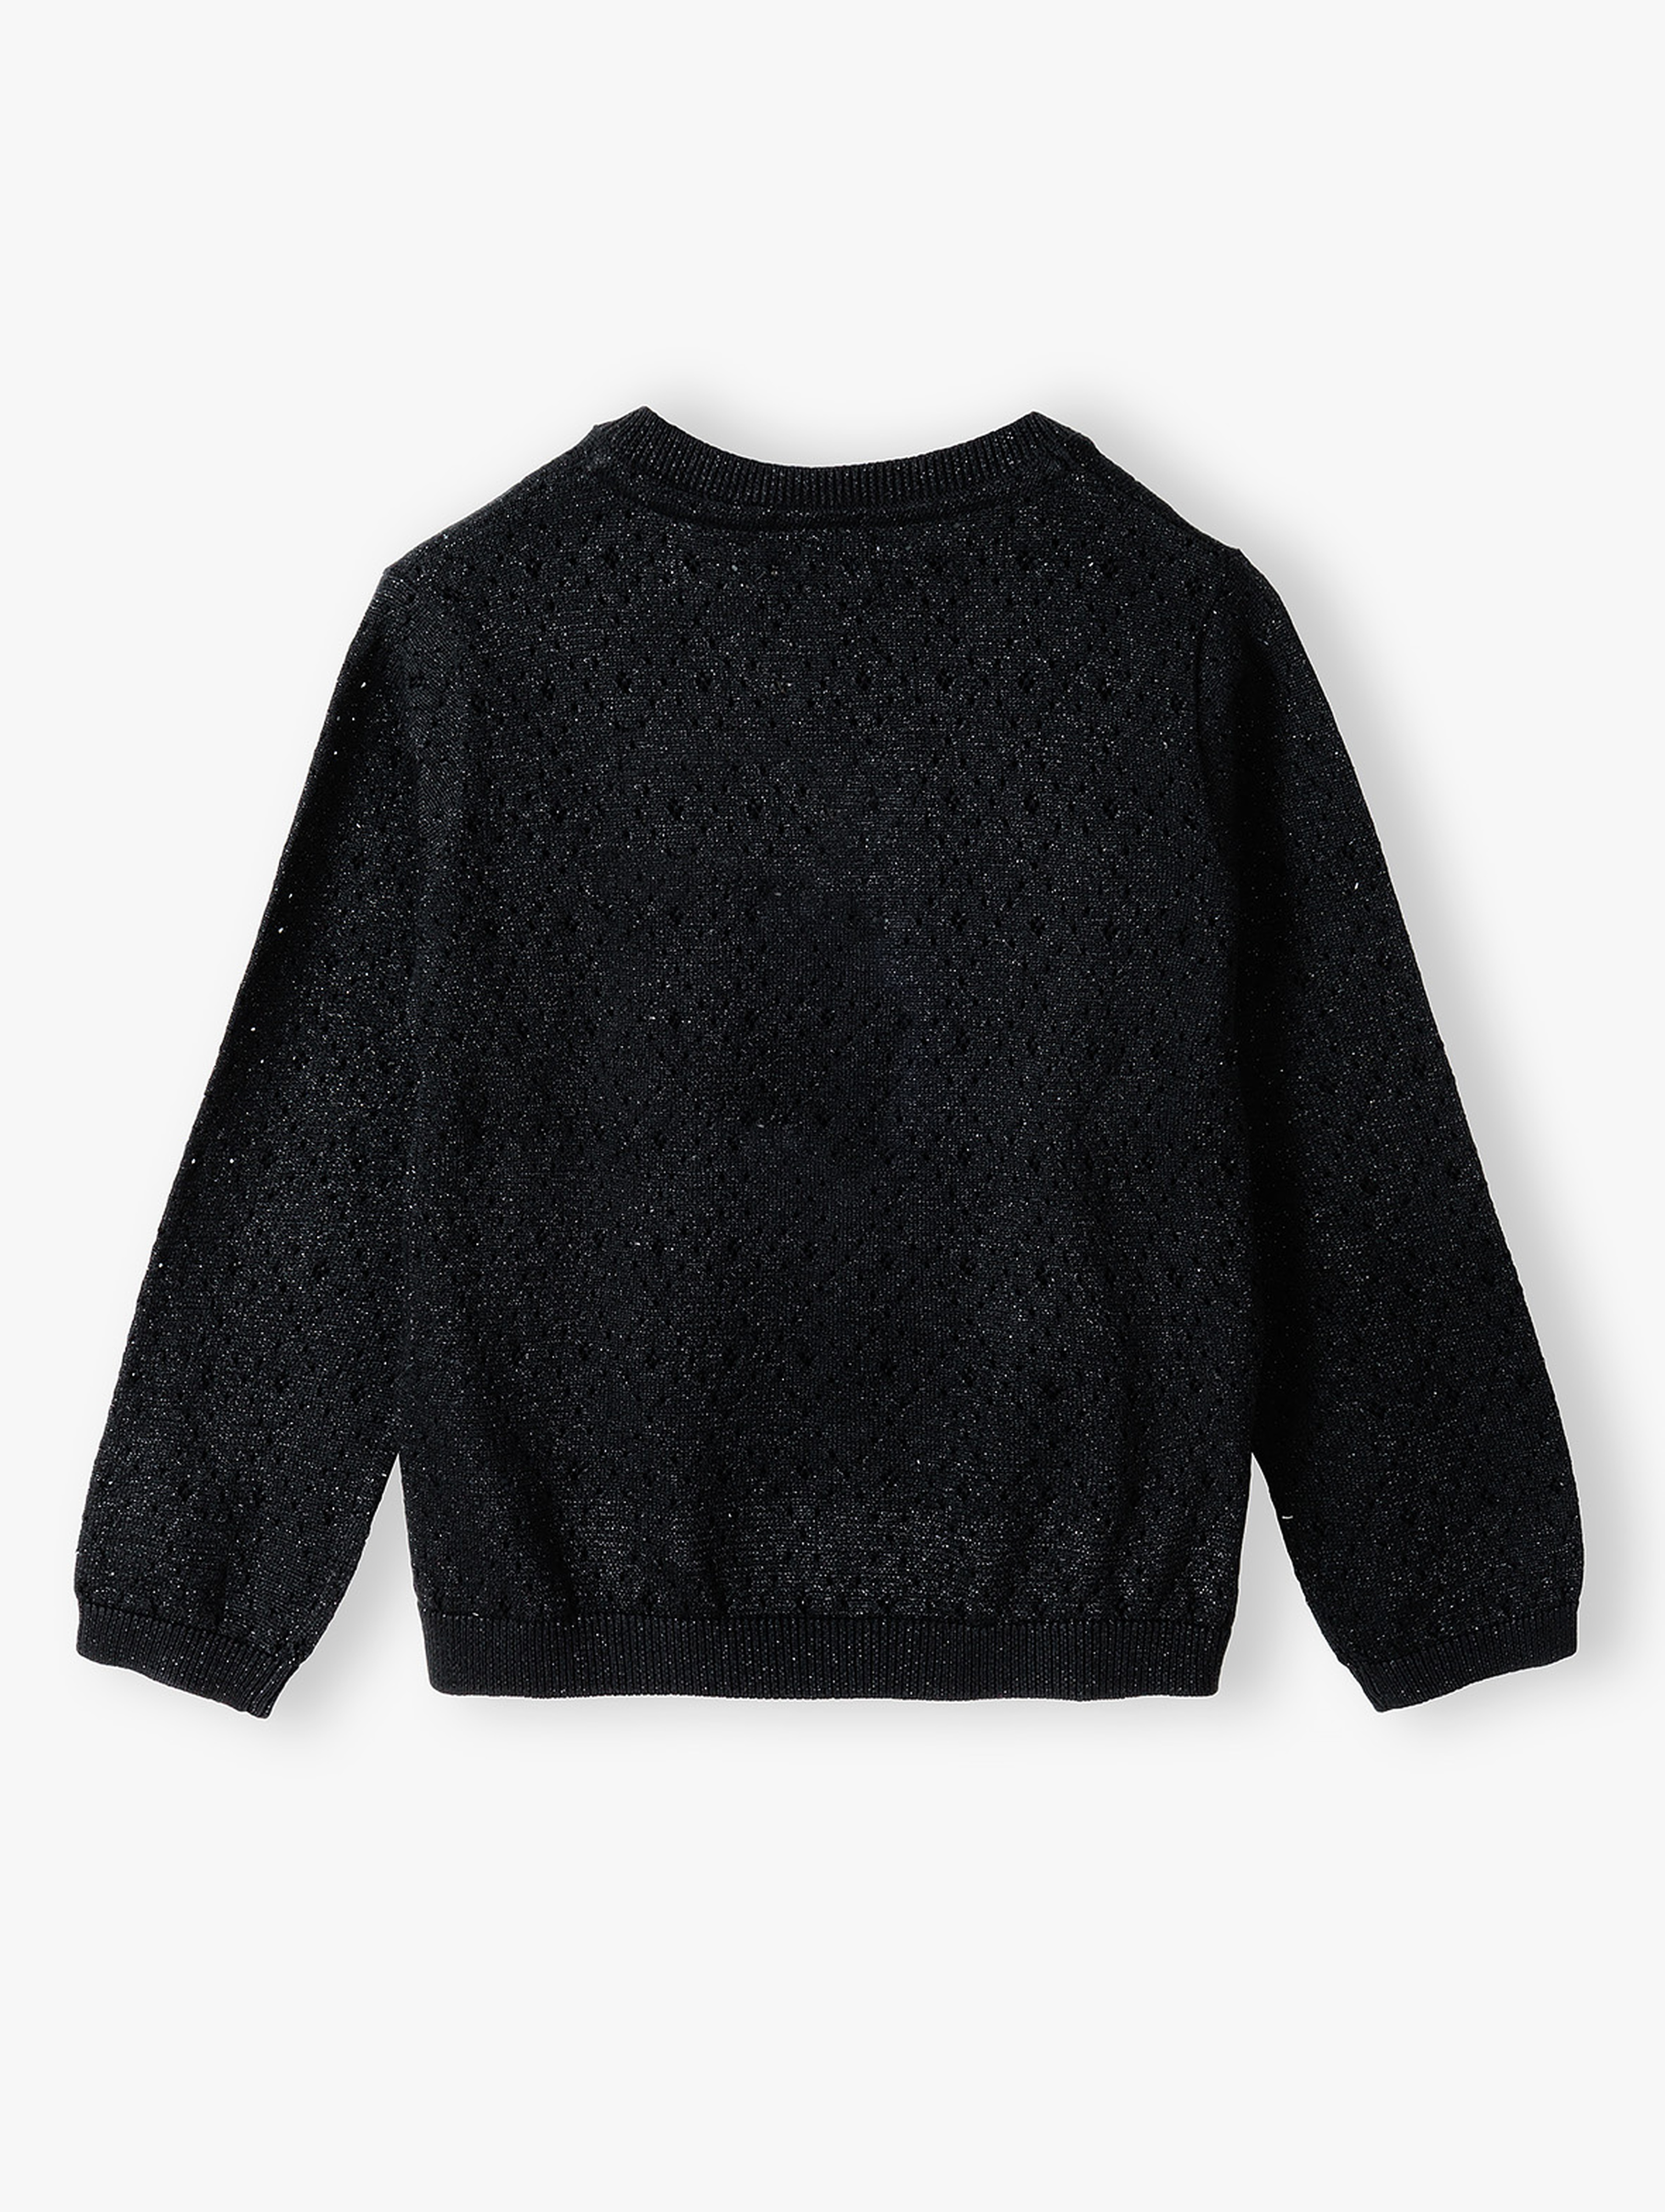 Czarny elegancki sweter dla dziewczynki zapinany na guziki